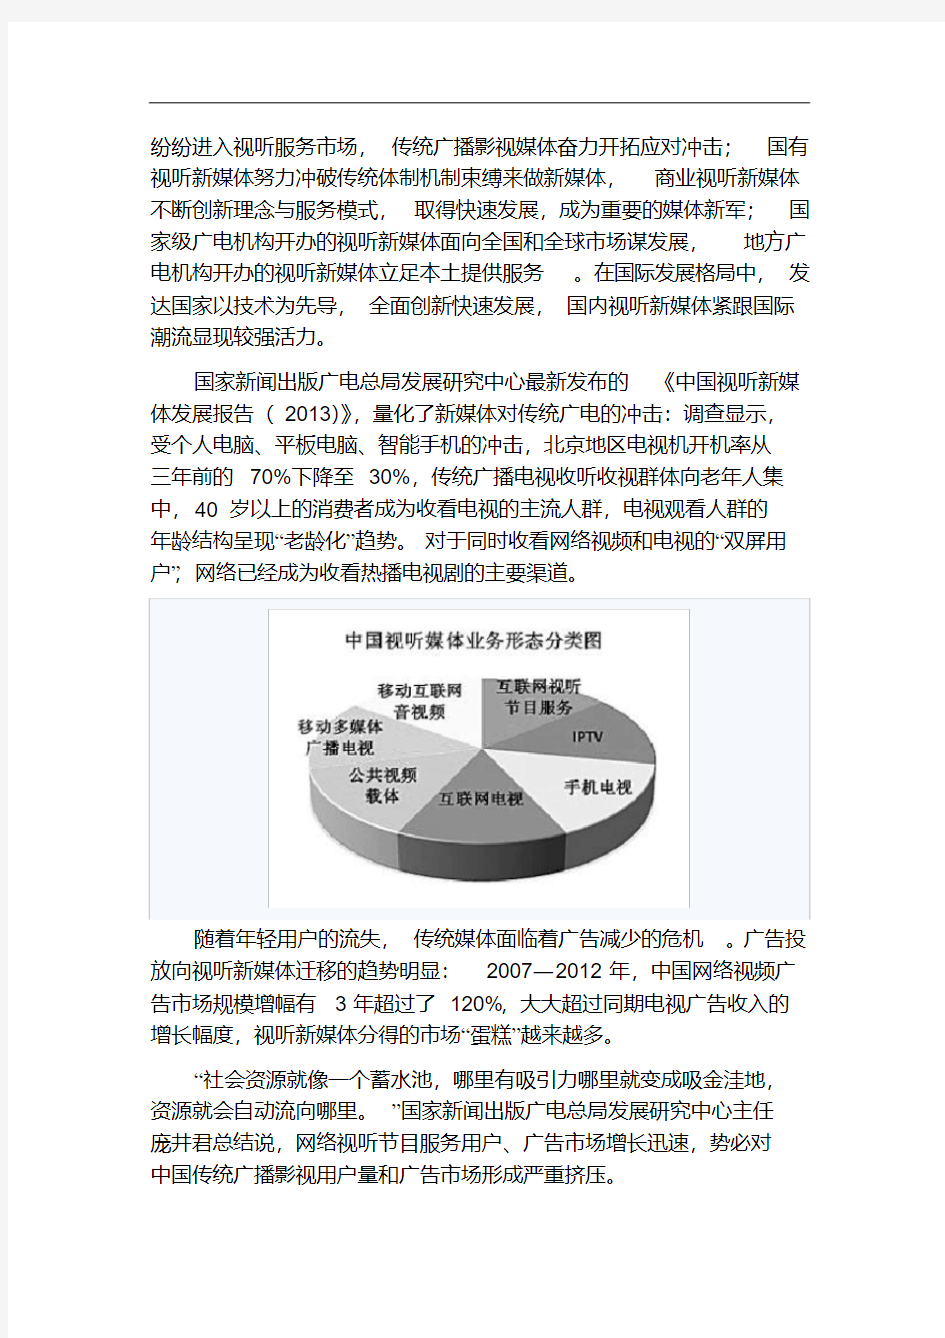 《中国视听新媒体发展报告(2013)》发布